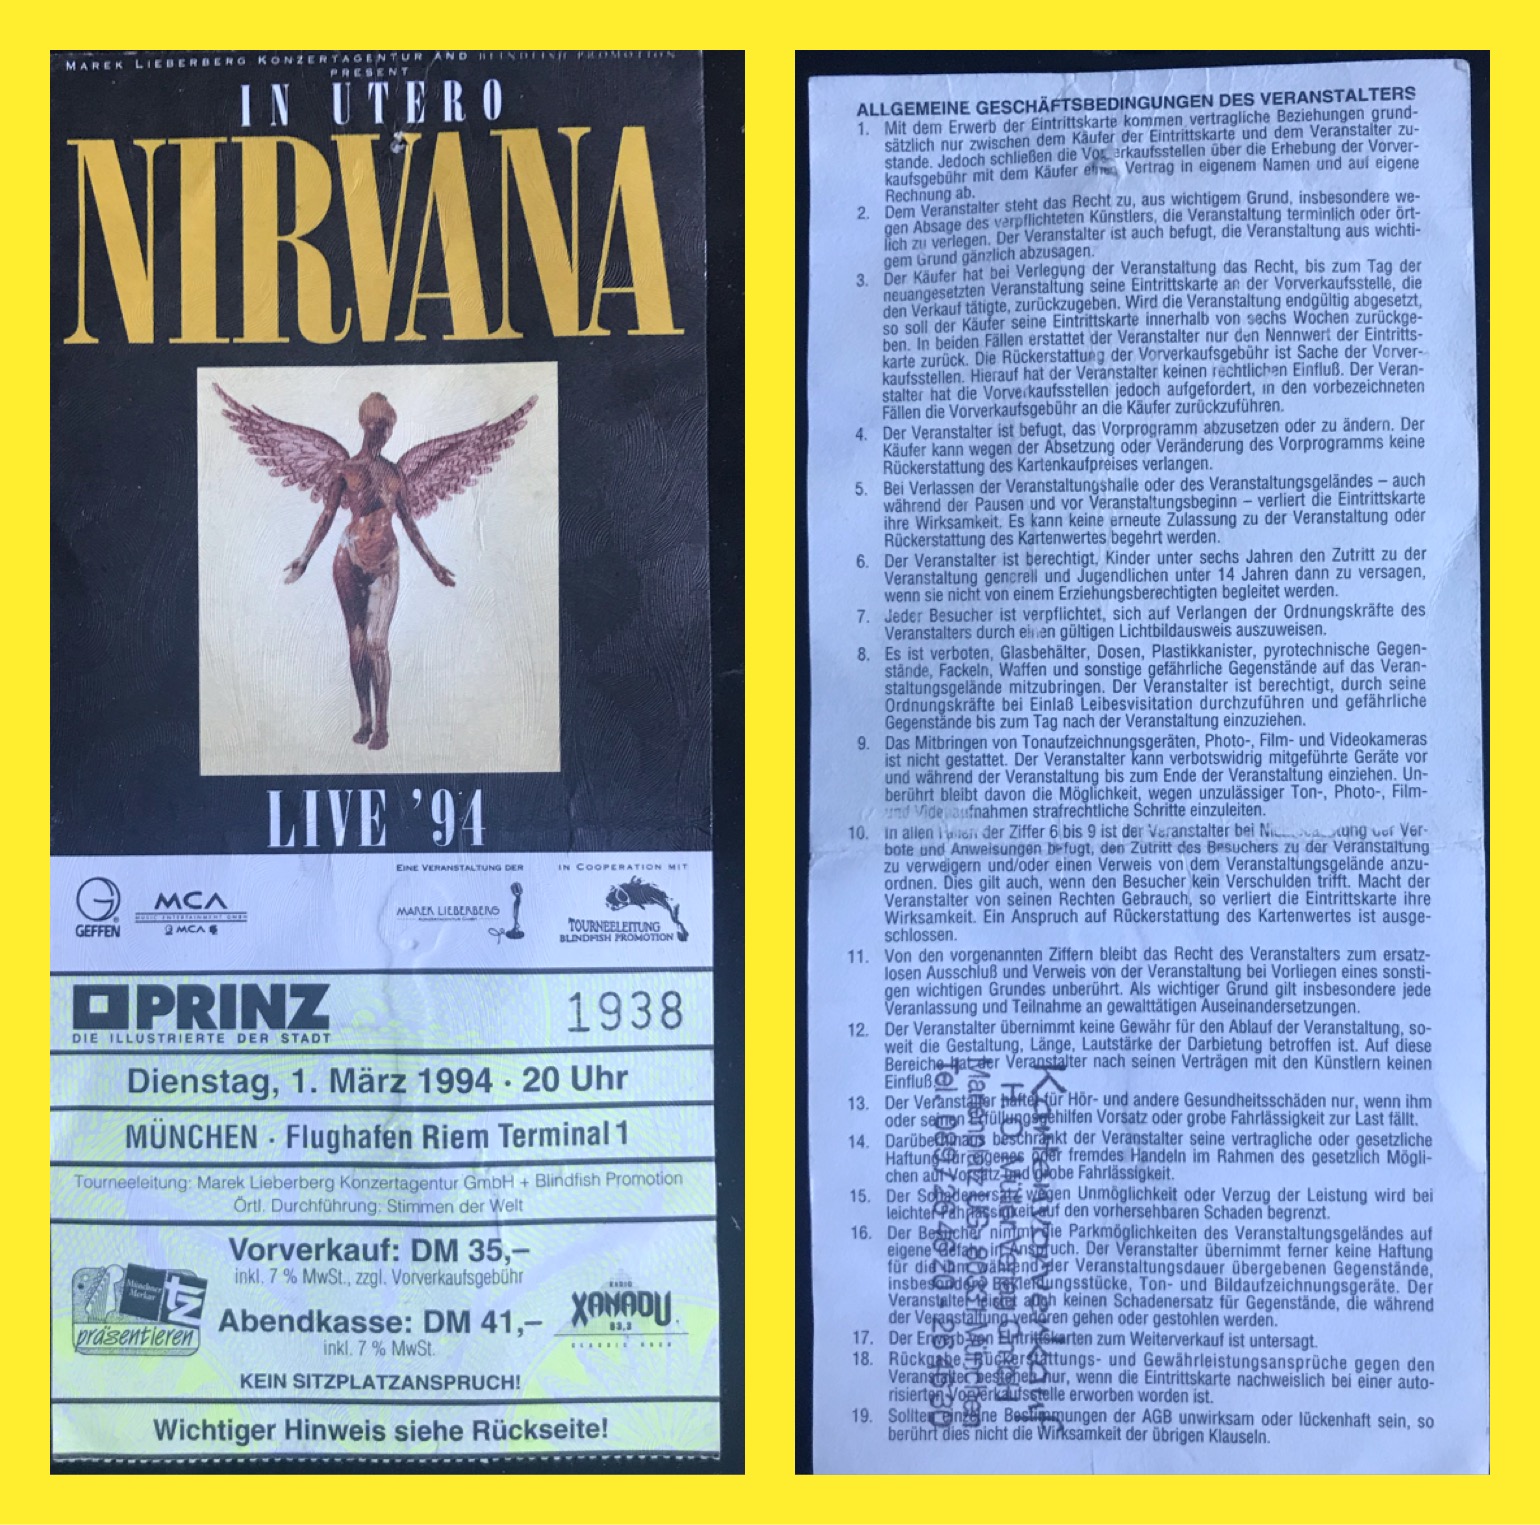 nirvana tour dates 1994